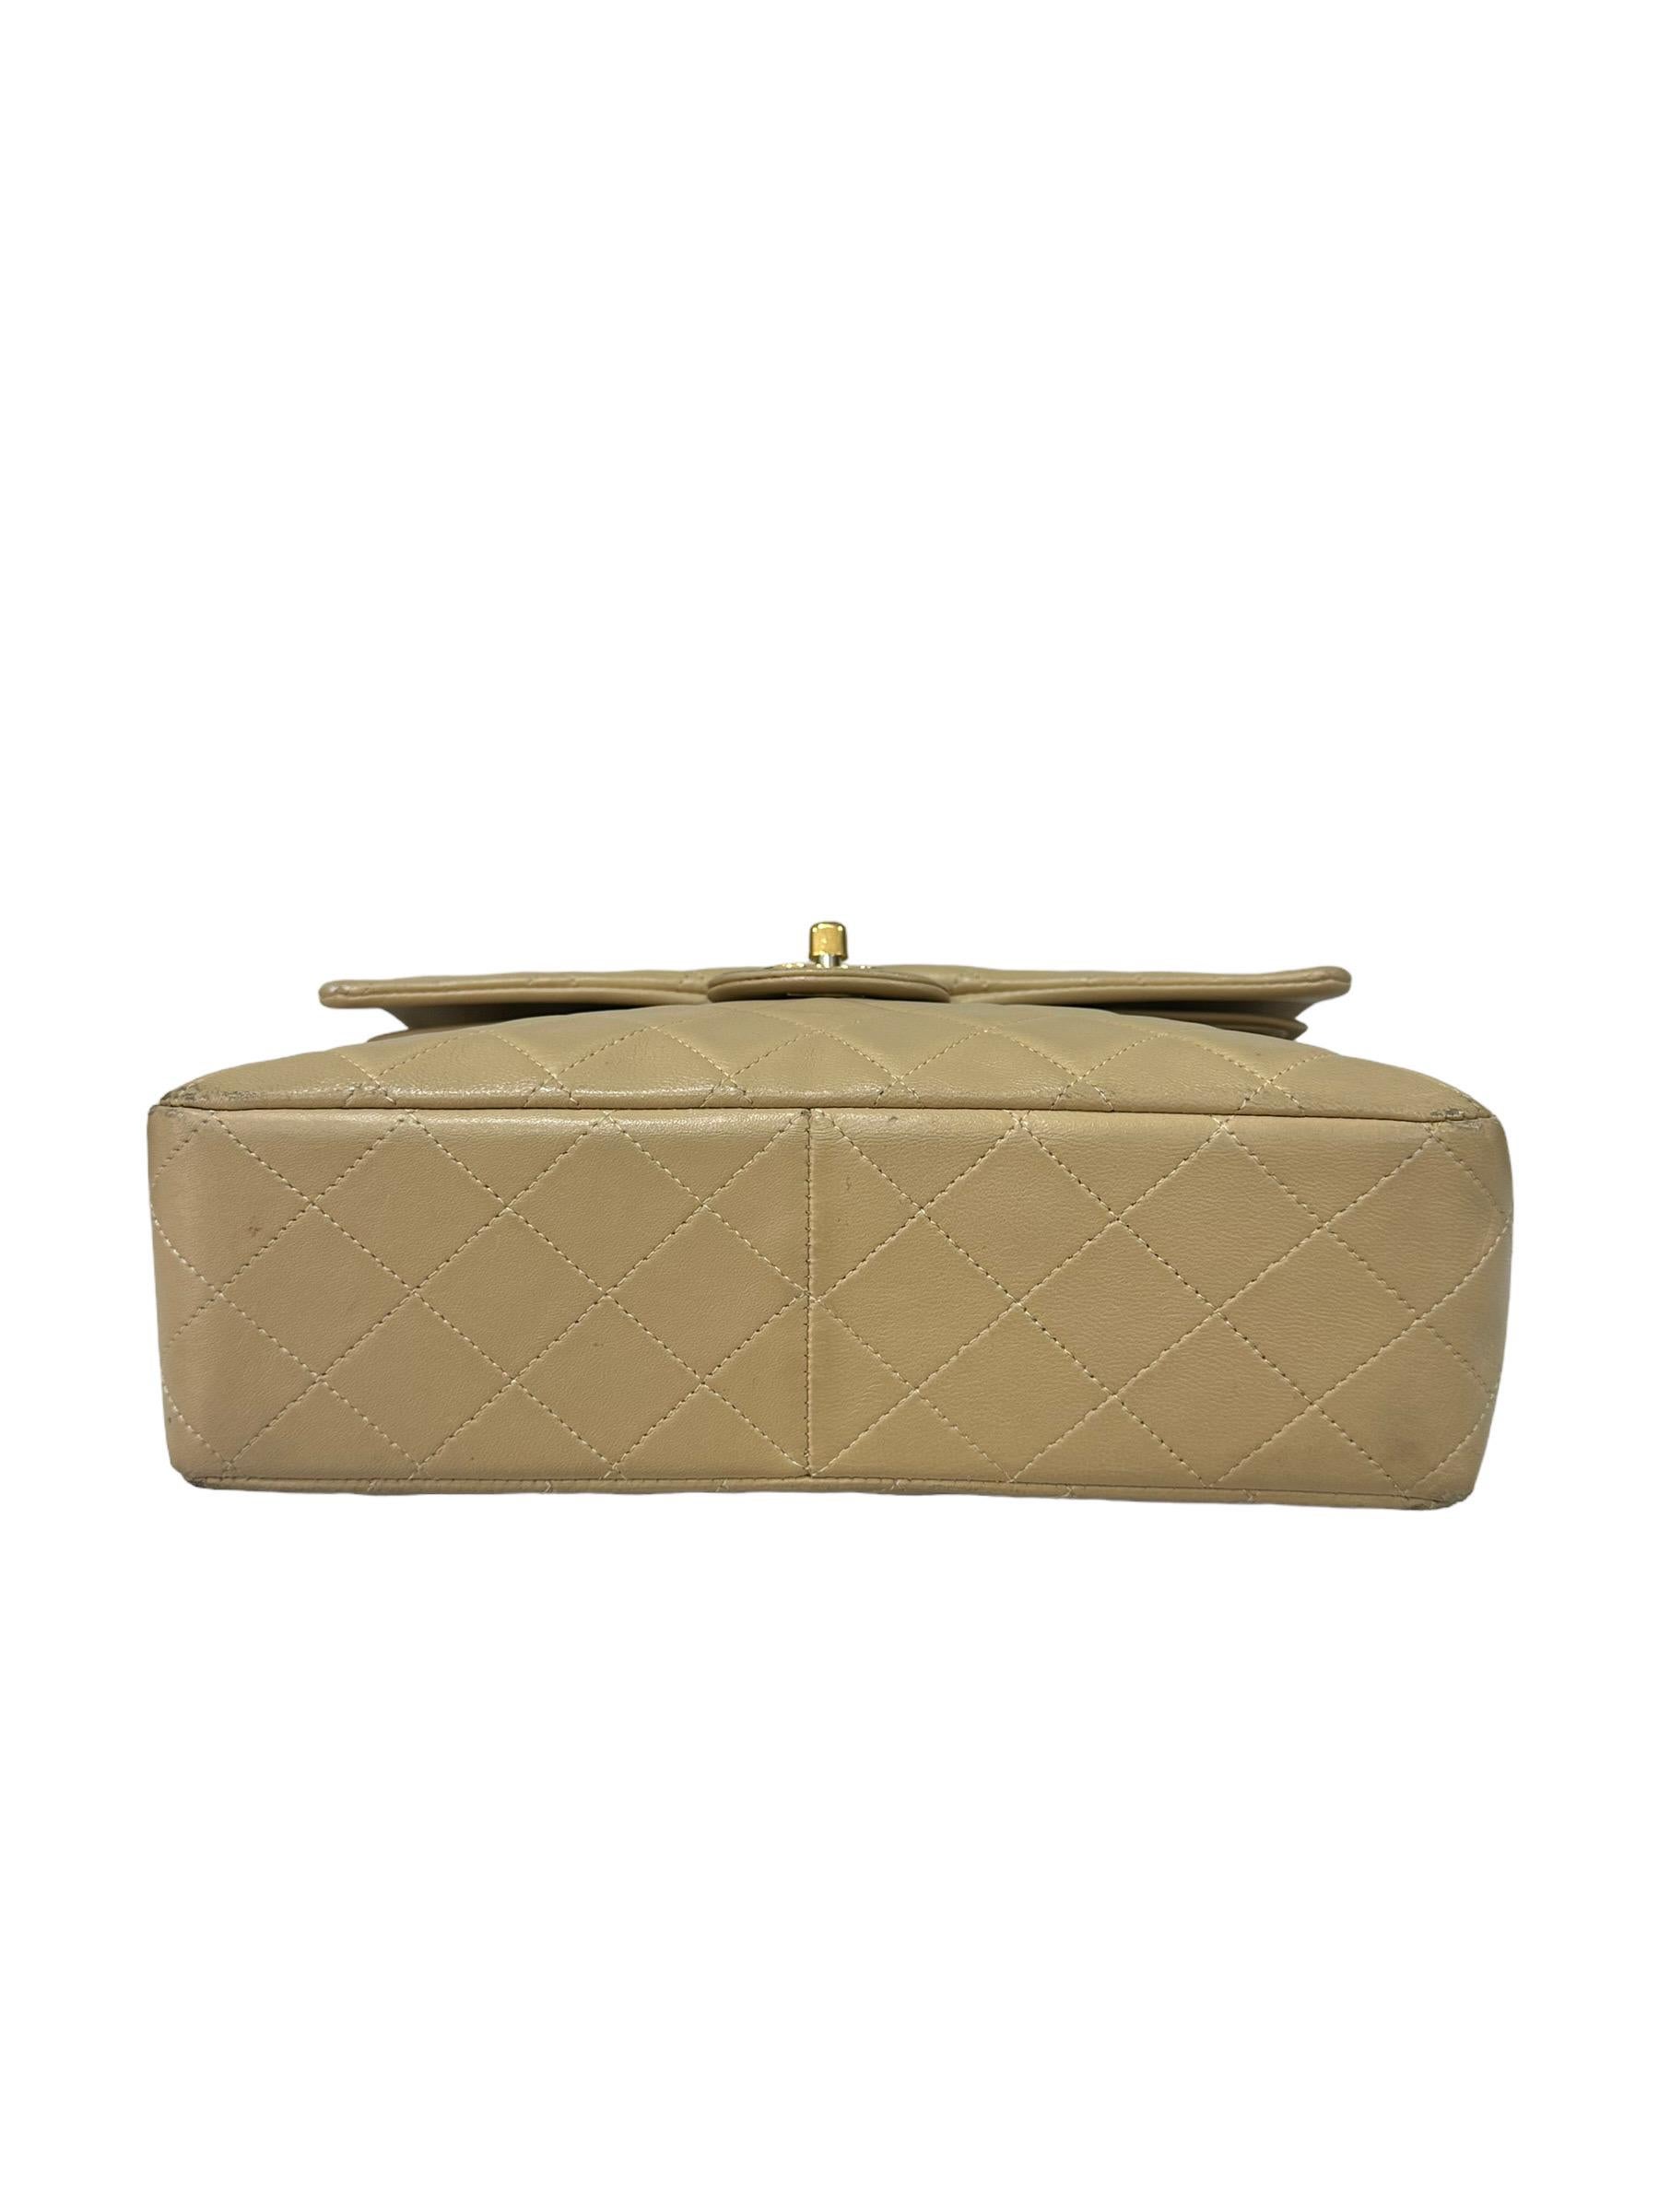 ‘90 Chanel Flap Vintage Beige Leather Shoulder Bag For Sale 1